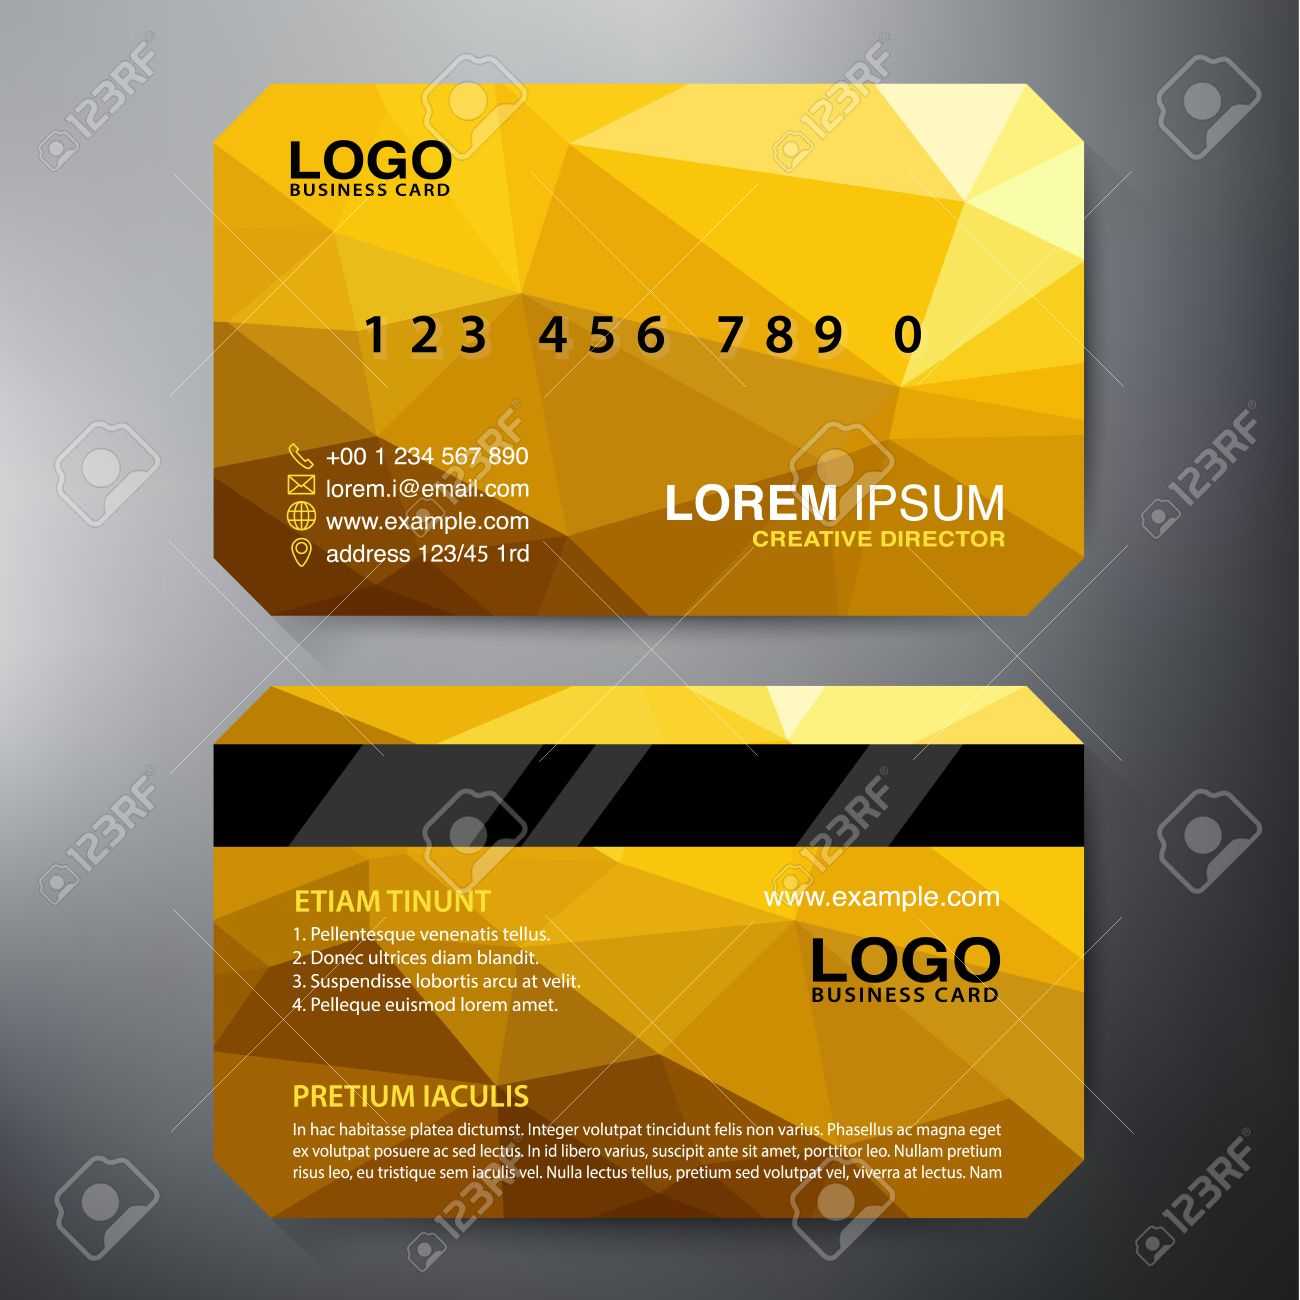 Modern Business Card Design Template. Vector Illustration Intended For Modern Business Card Design Templates